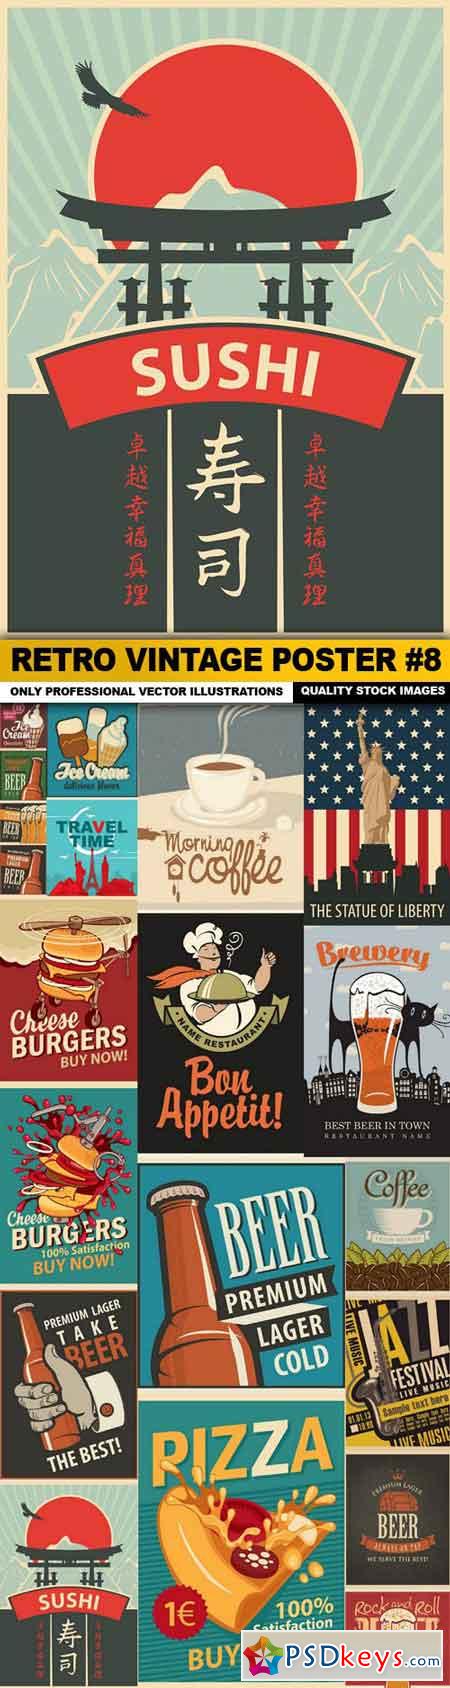 Retro Vintage Poster #8 - 20 Vector